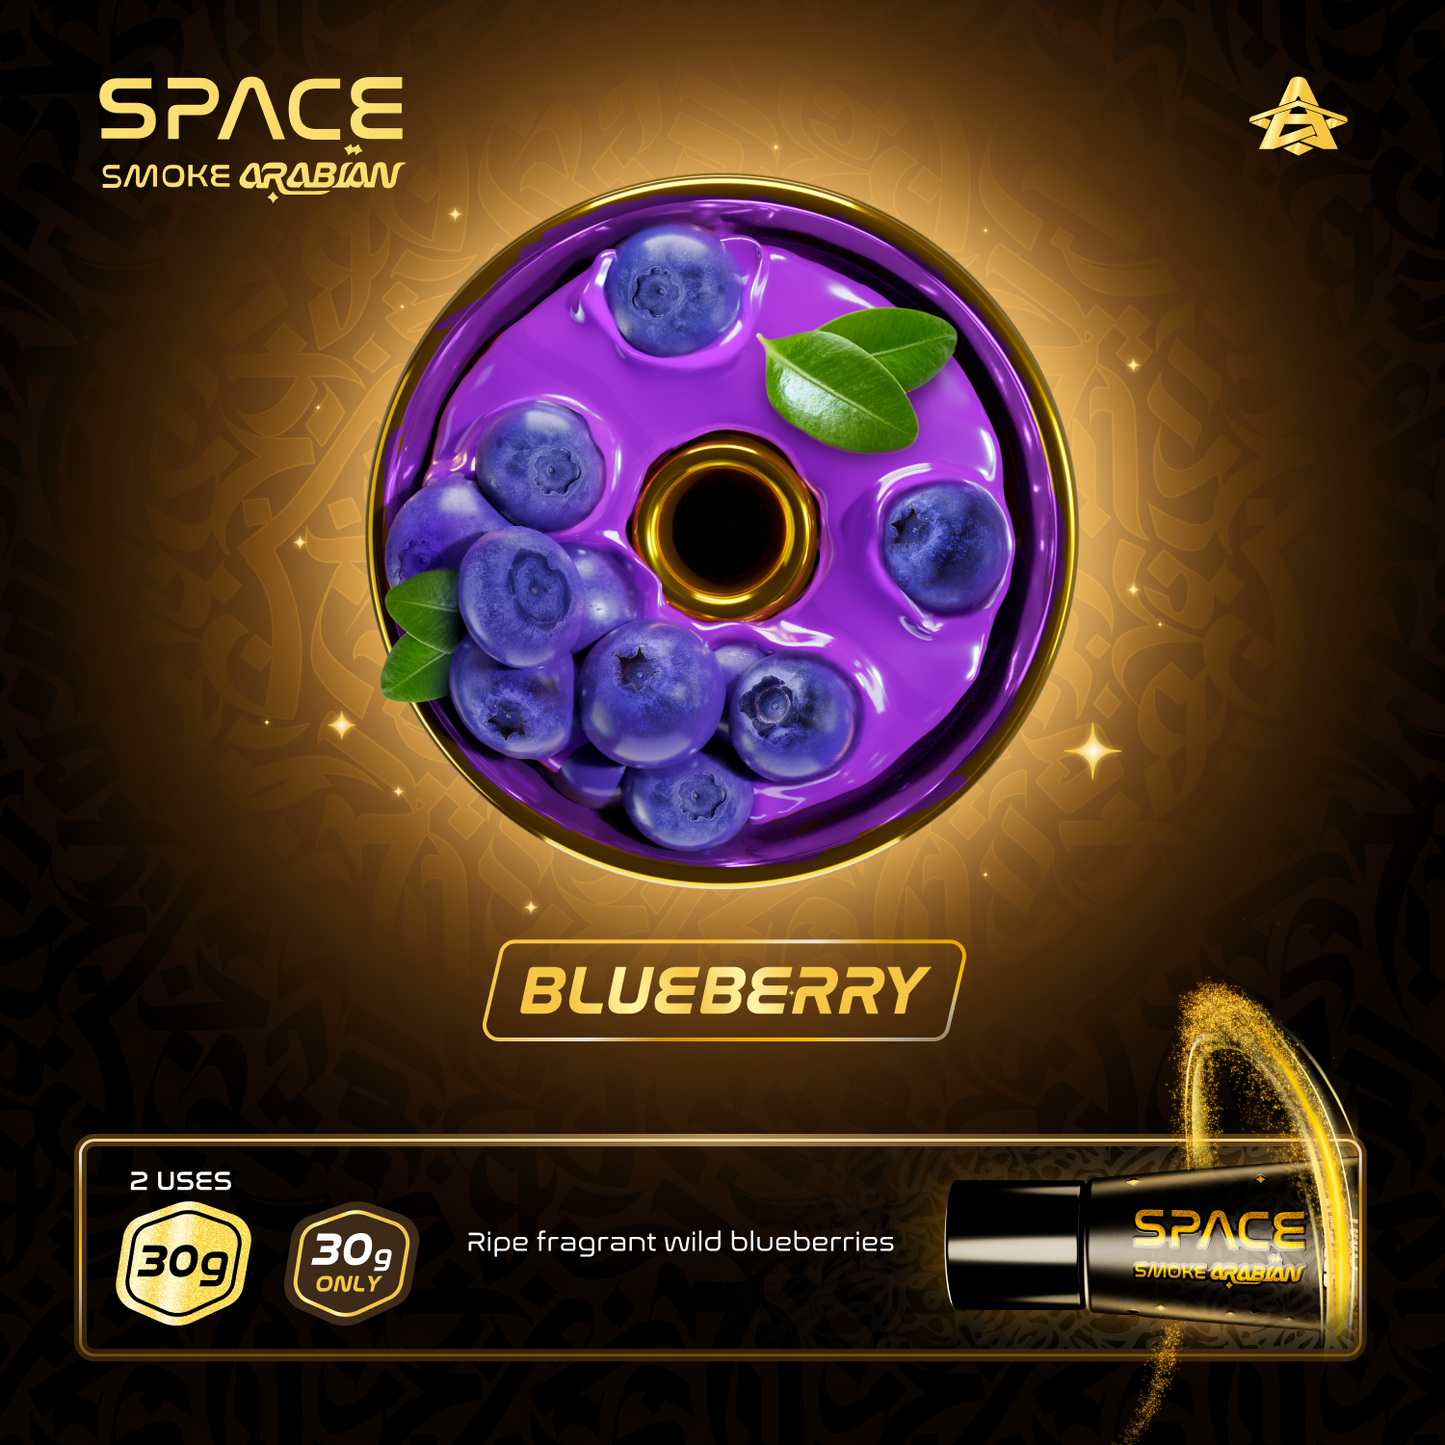 Space Smoke Arabian Blueberry Hookah Paste 30g